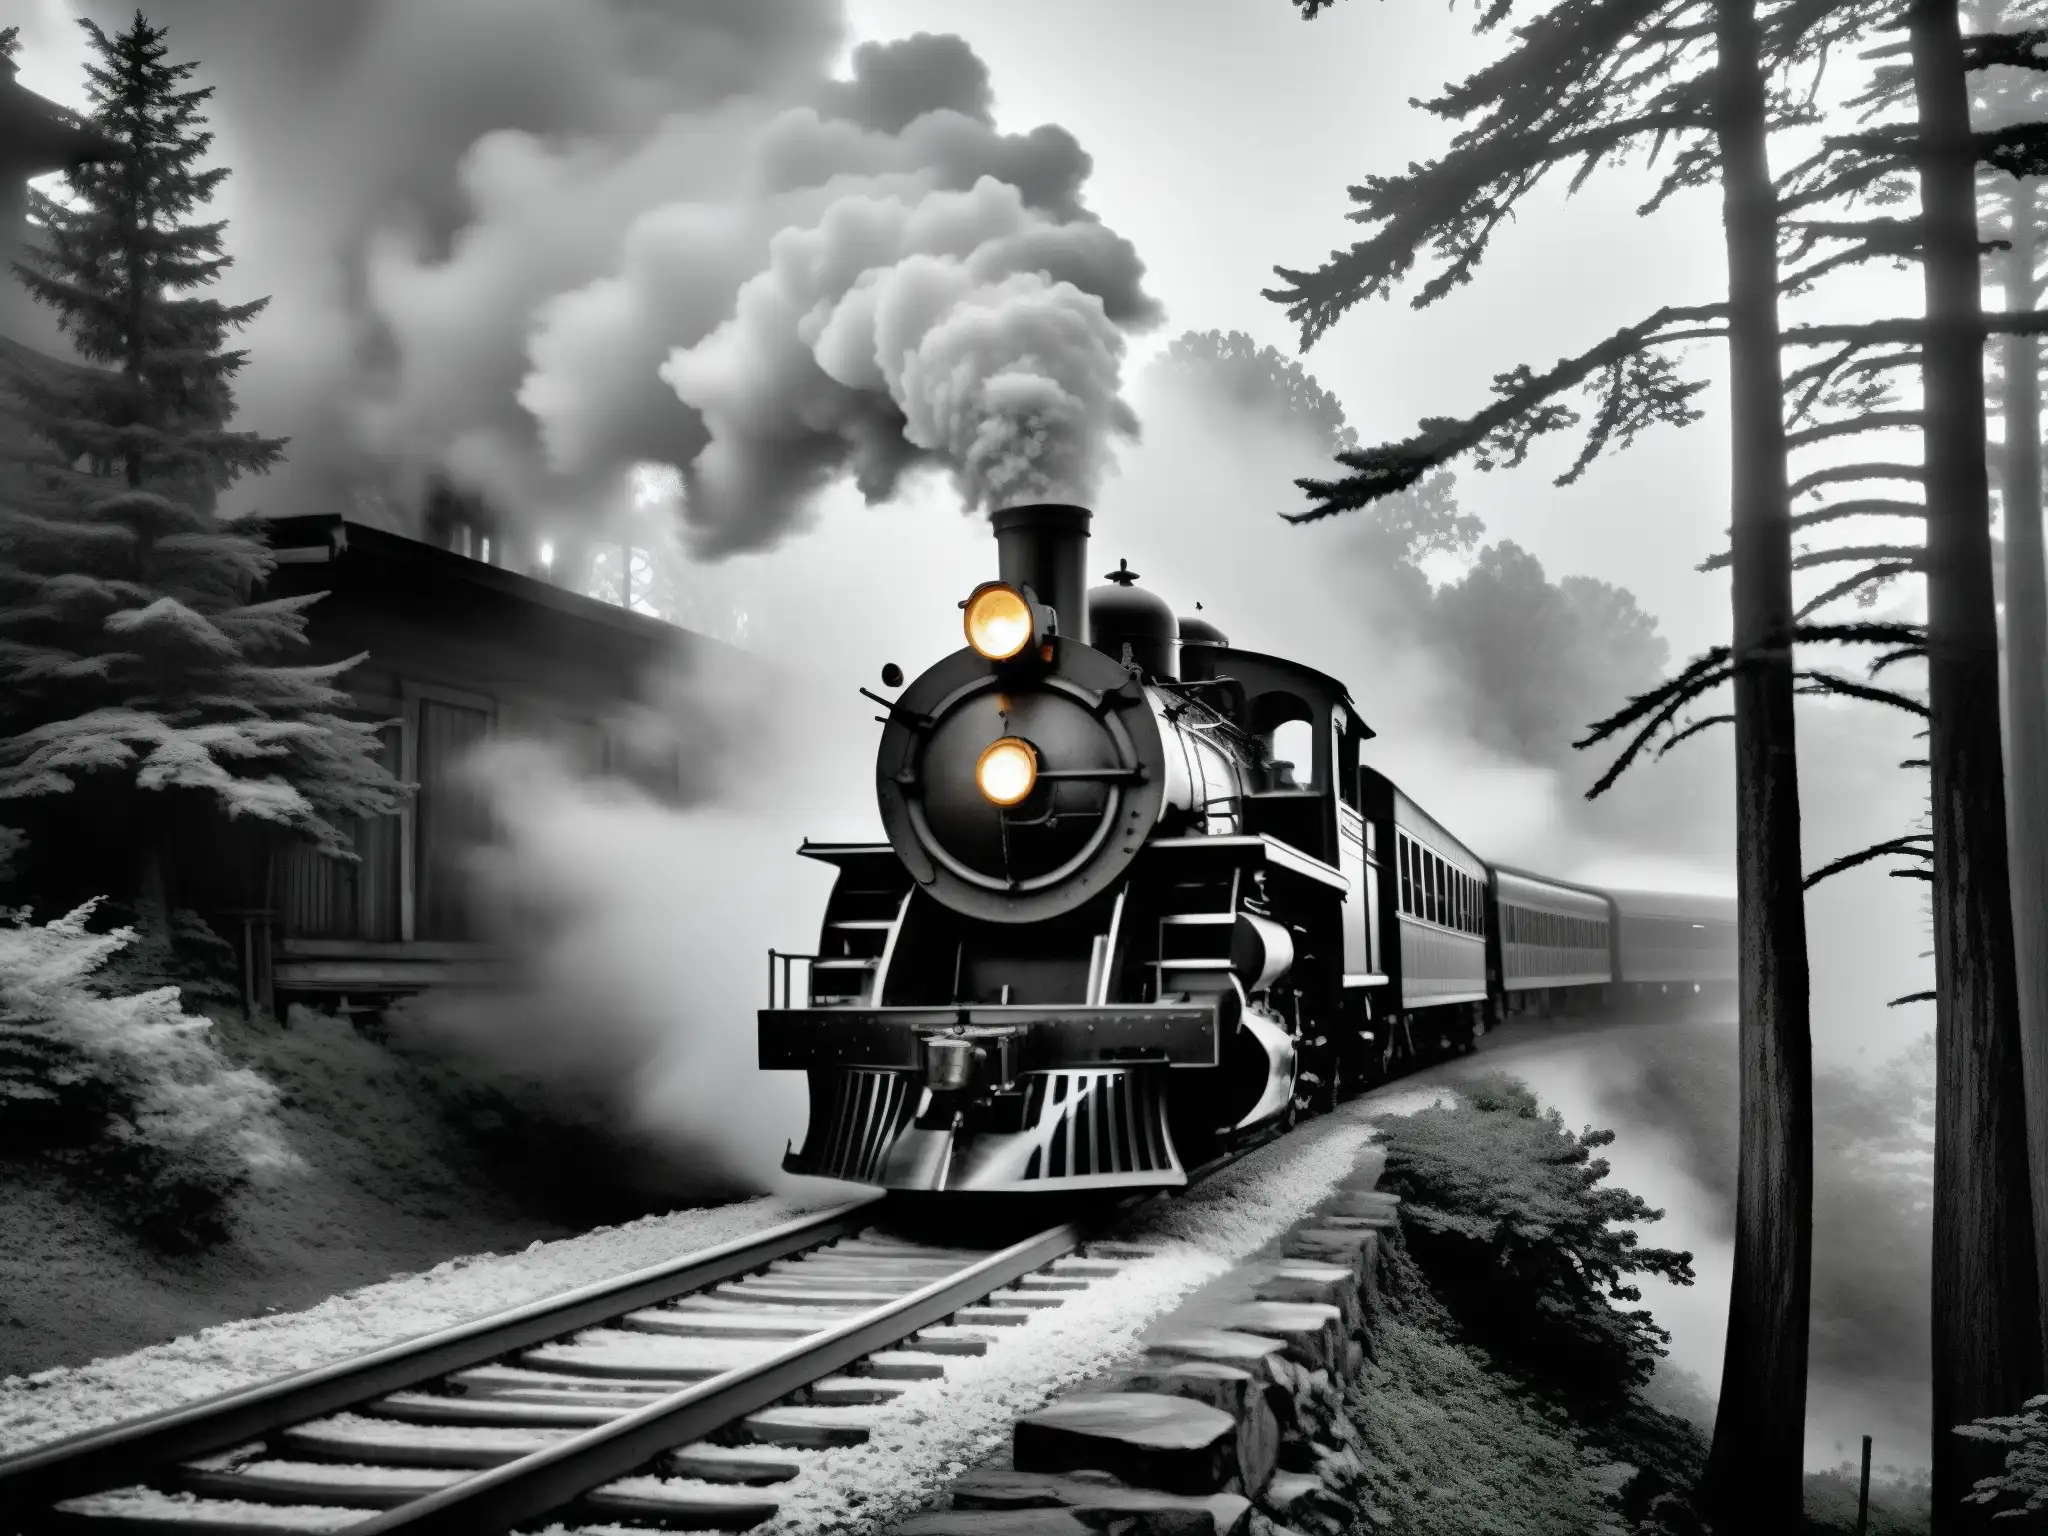 Imagen en blanco y negro del histórico tren fantasma de St